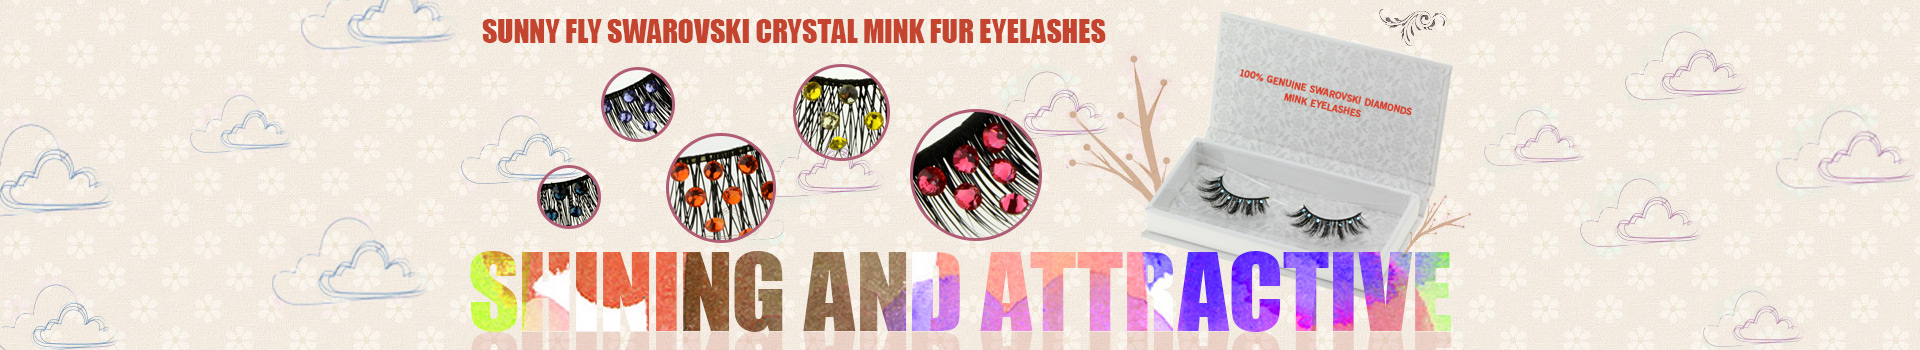 Swarovski Crystal Mink Fur Eyelashes MS35